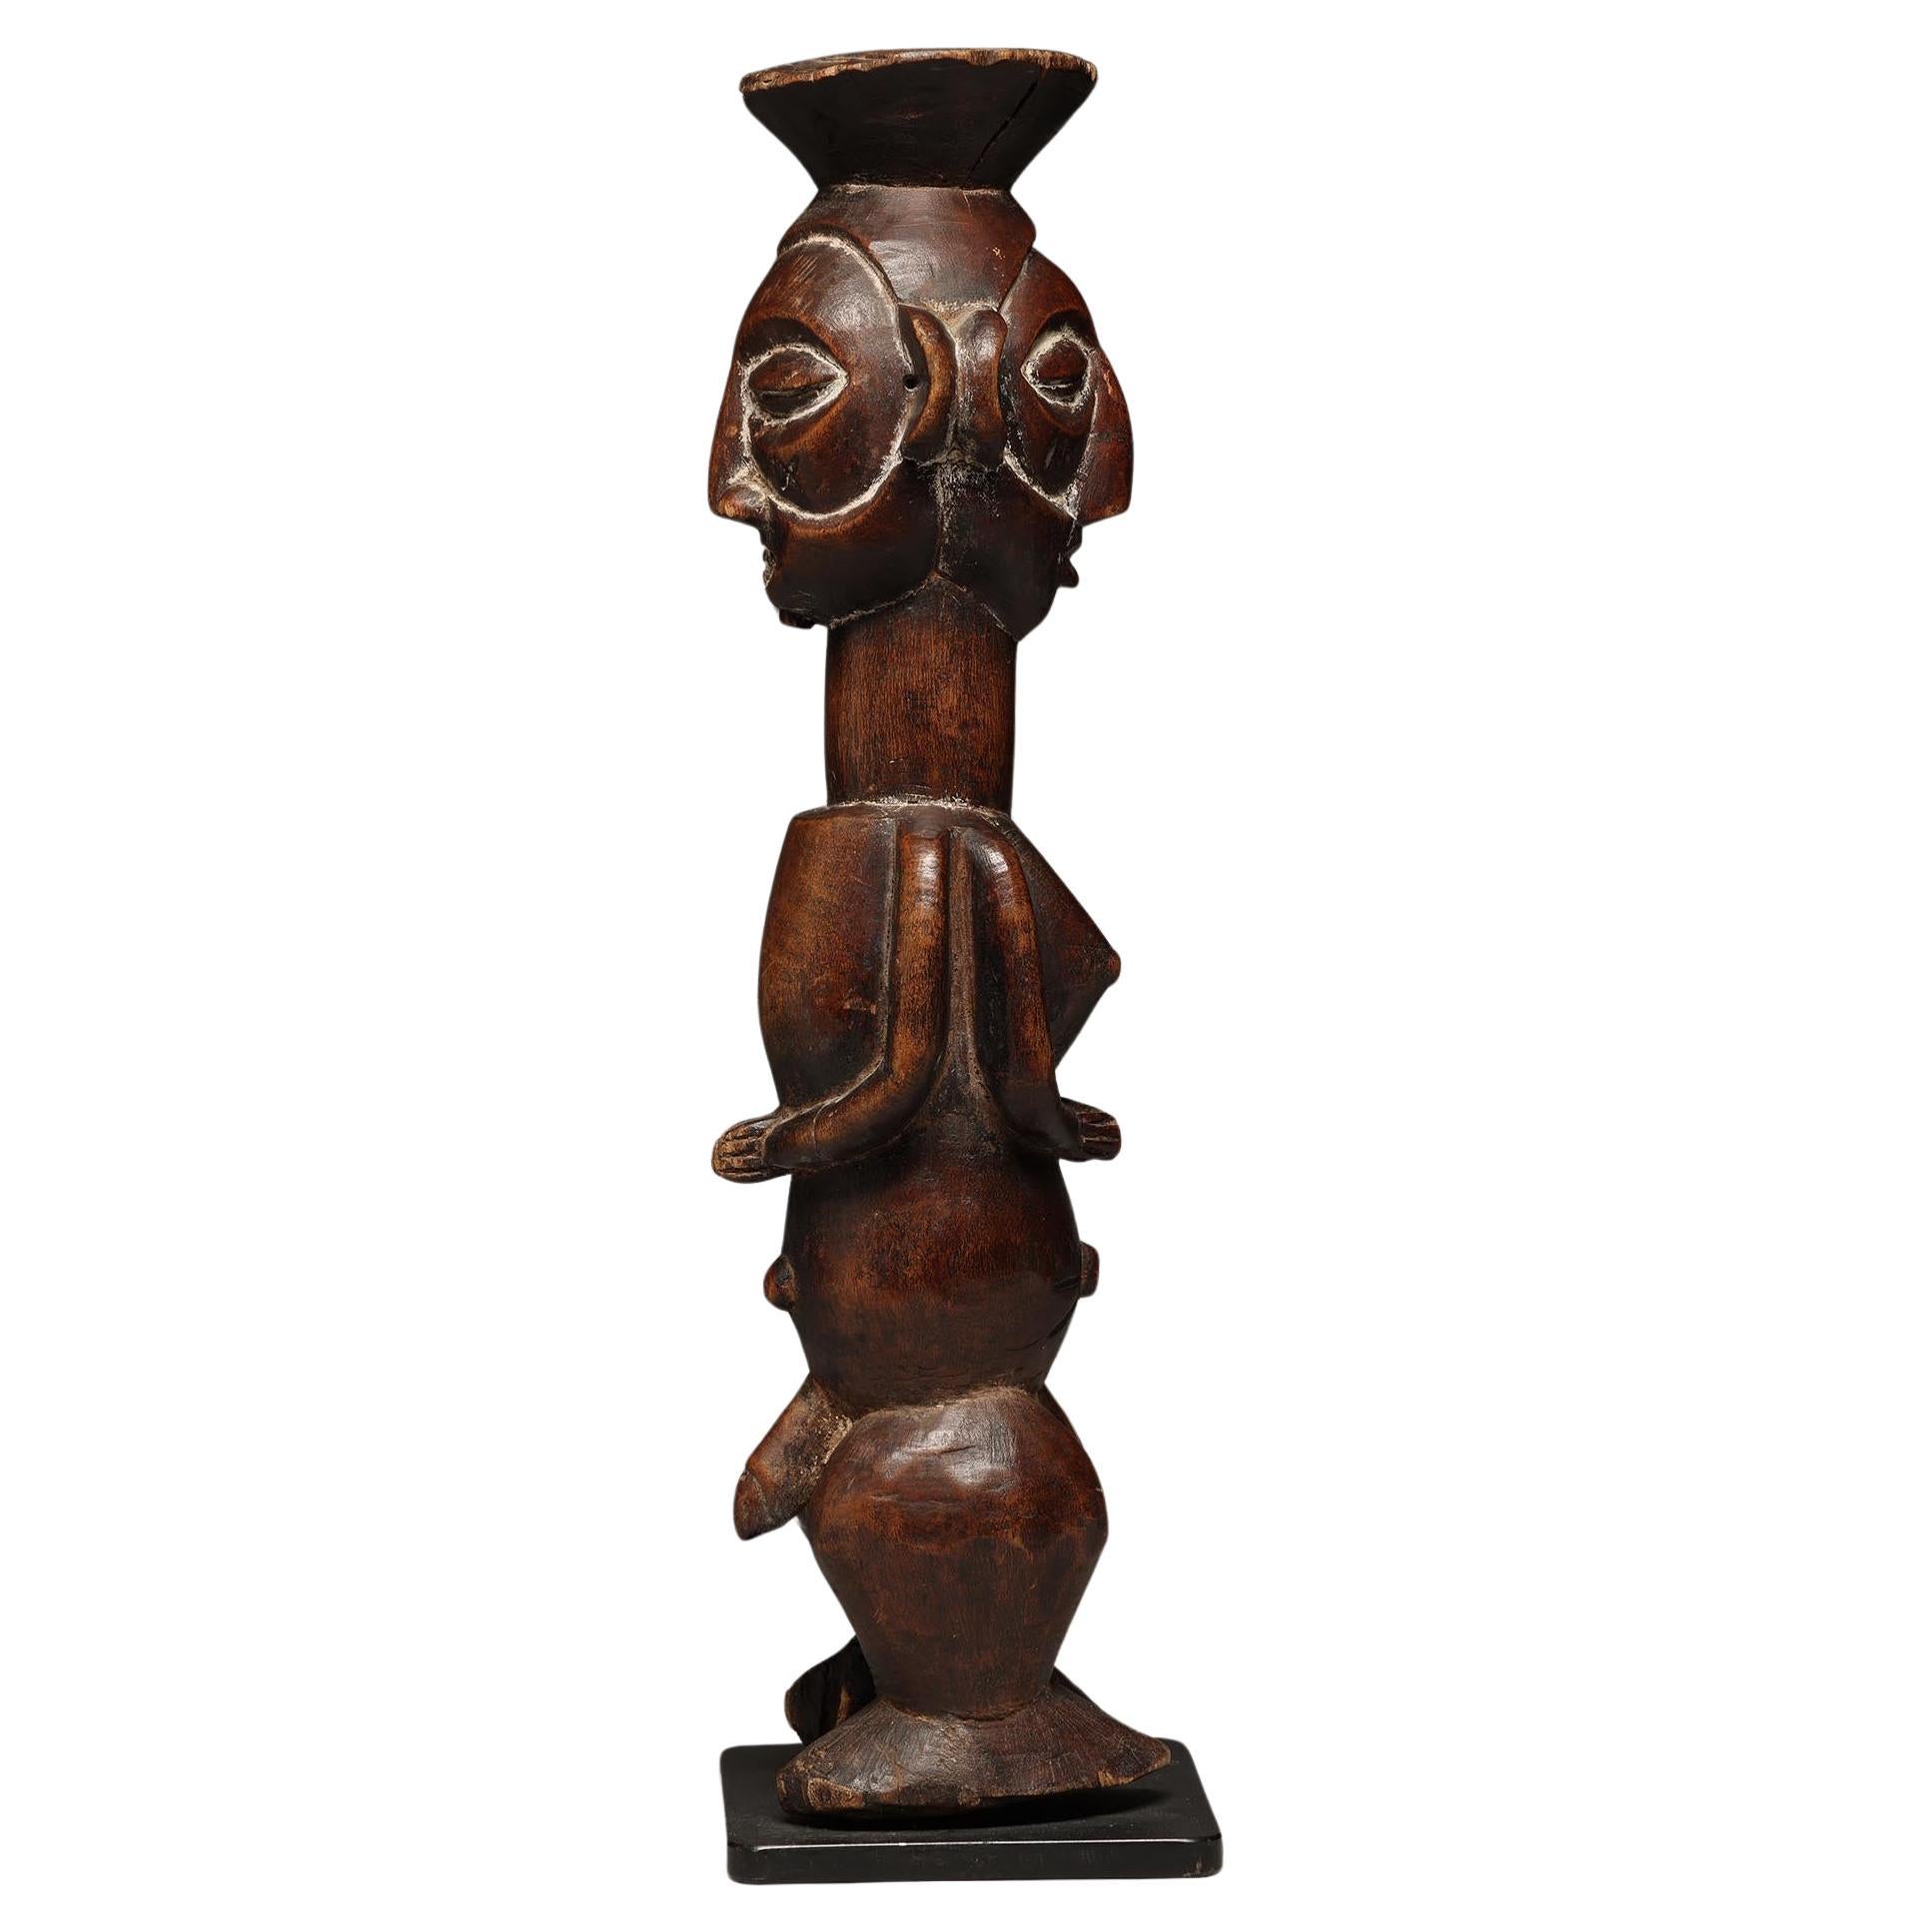 Yaka Bois sculpté Janus debout dos à dos figure de divination homme/femme RDC Congo, Afrique
La figurine mesure 17 1/2